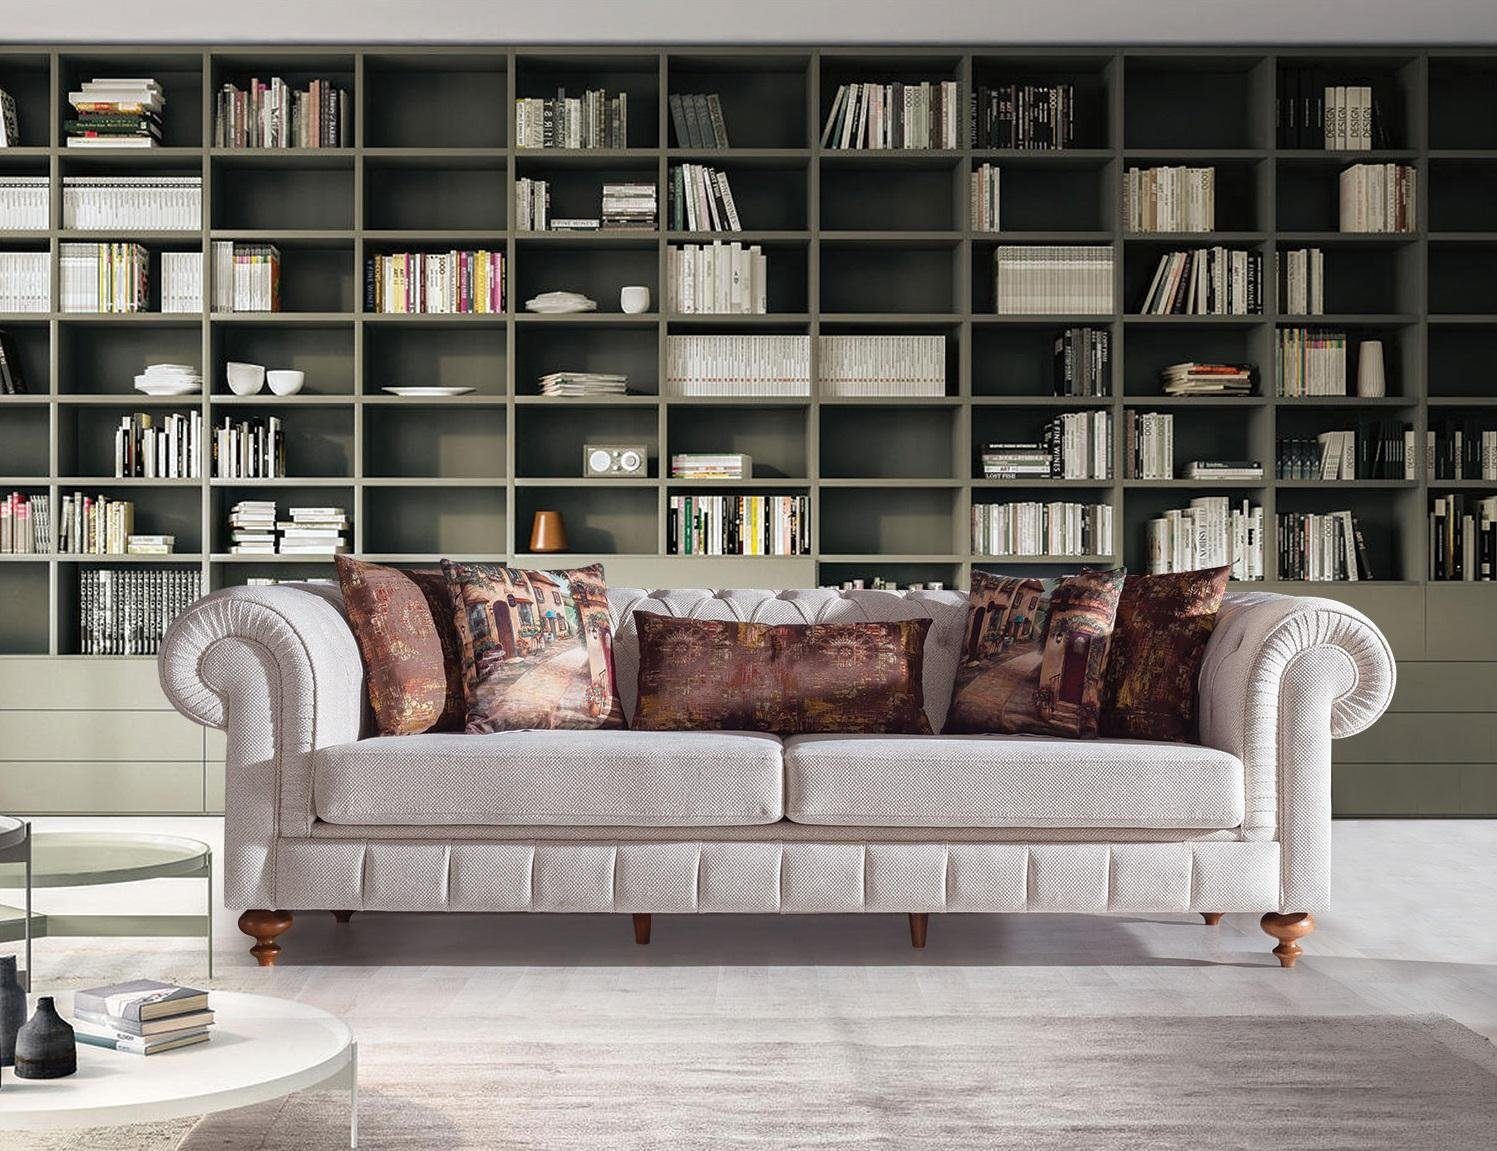 JVmoebel Made 3-er Sofa Design Möbel in Couch Dreisitzer Sofa Europe Neu, Grauer